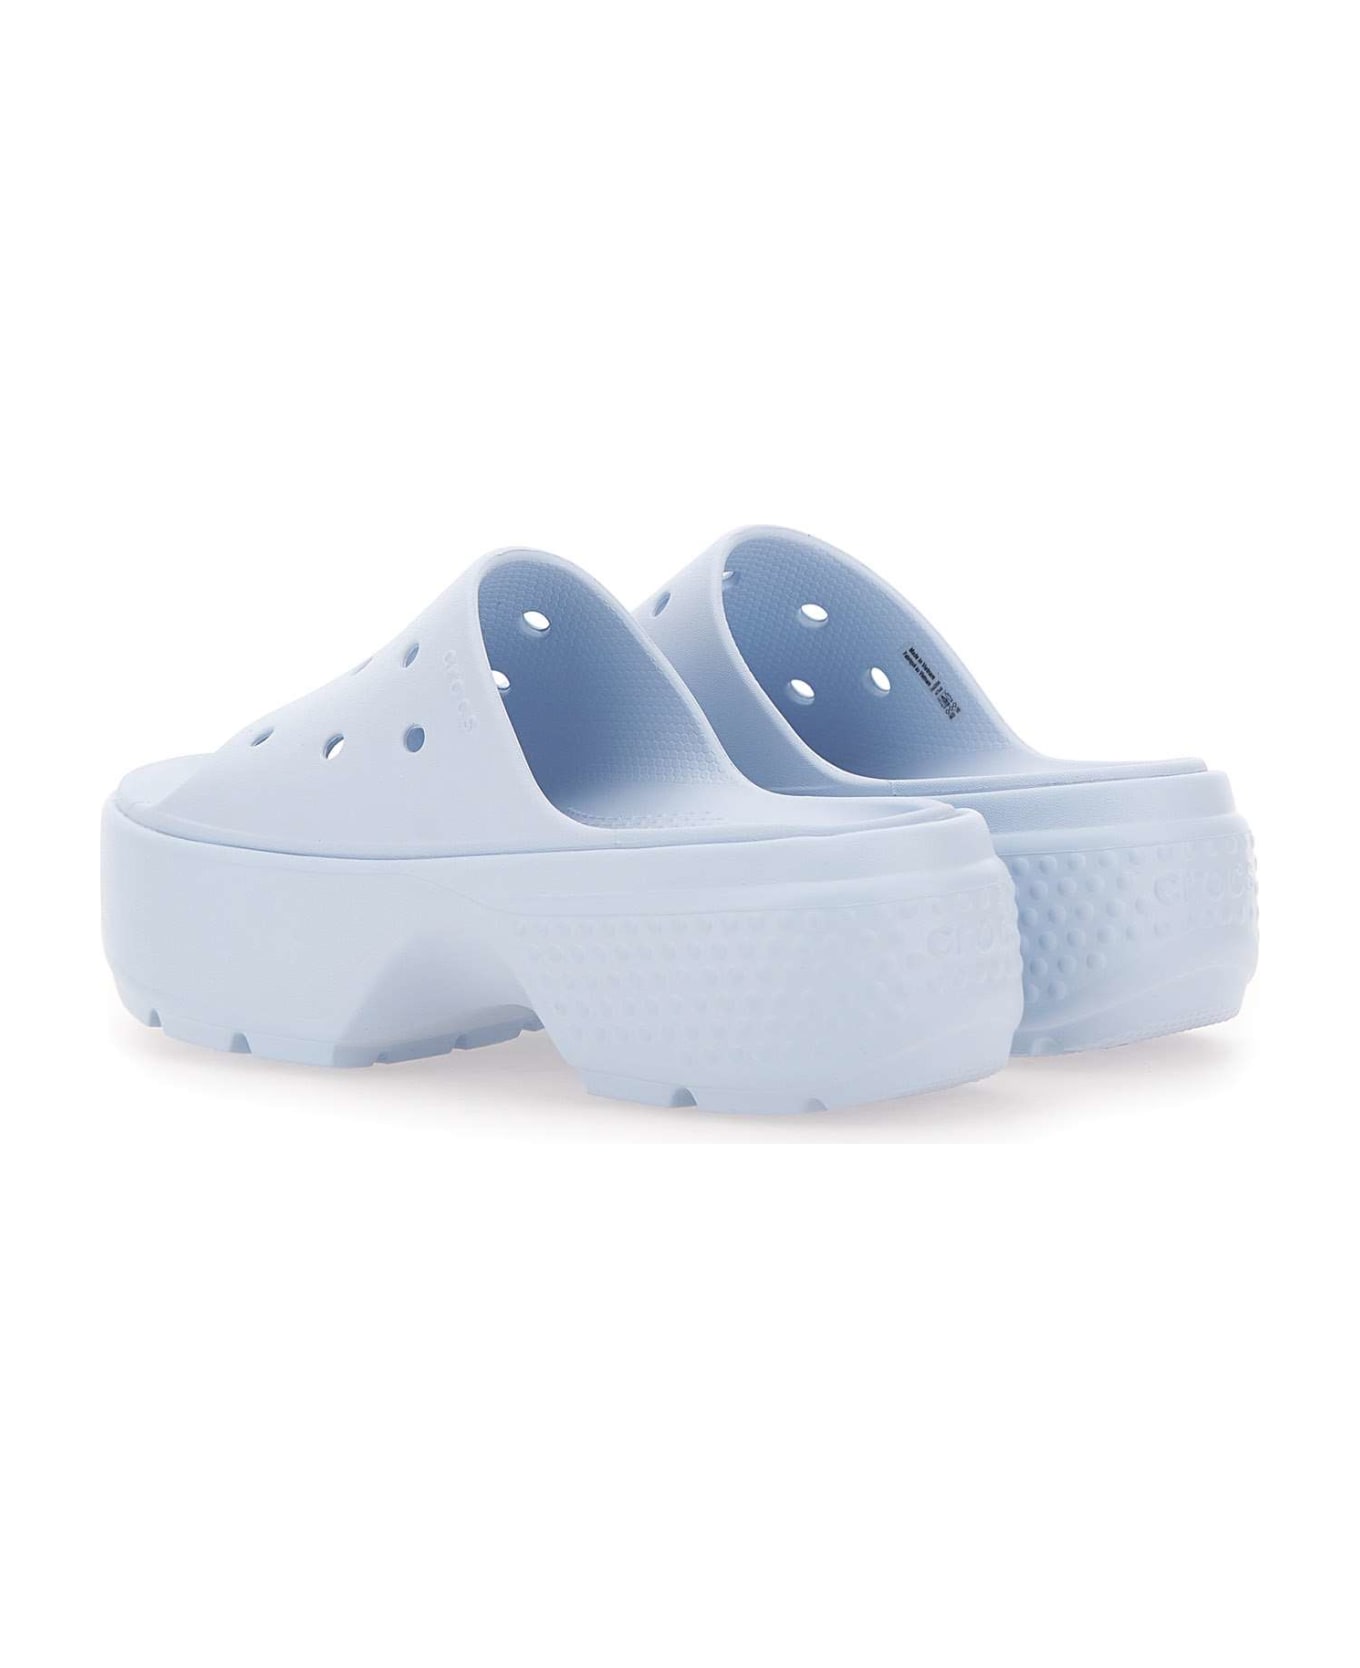 Crocs "stomp Slide" Sandals - BLUE サンダル